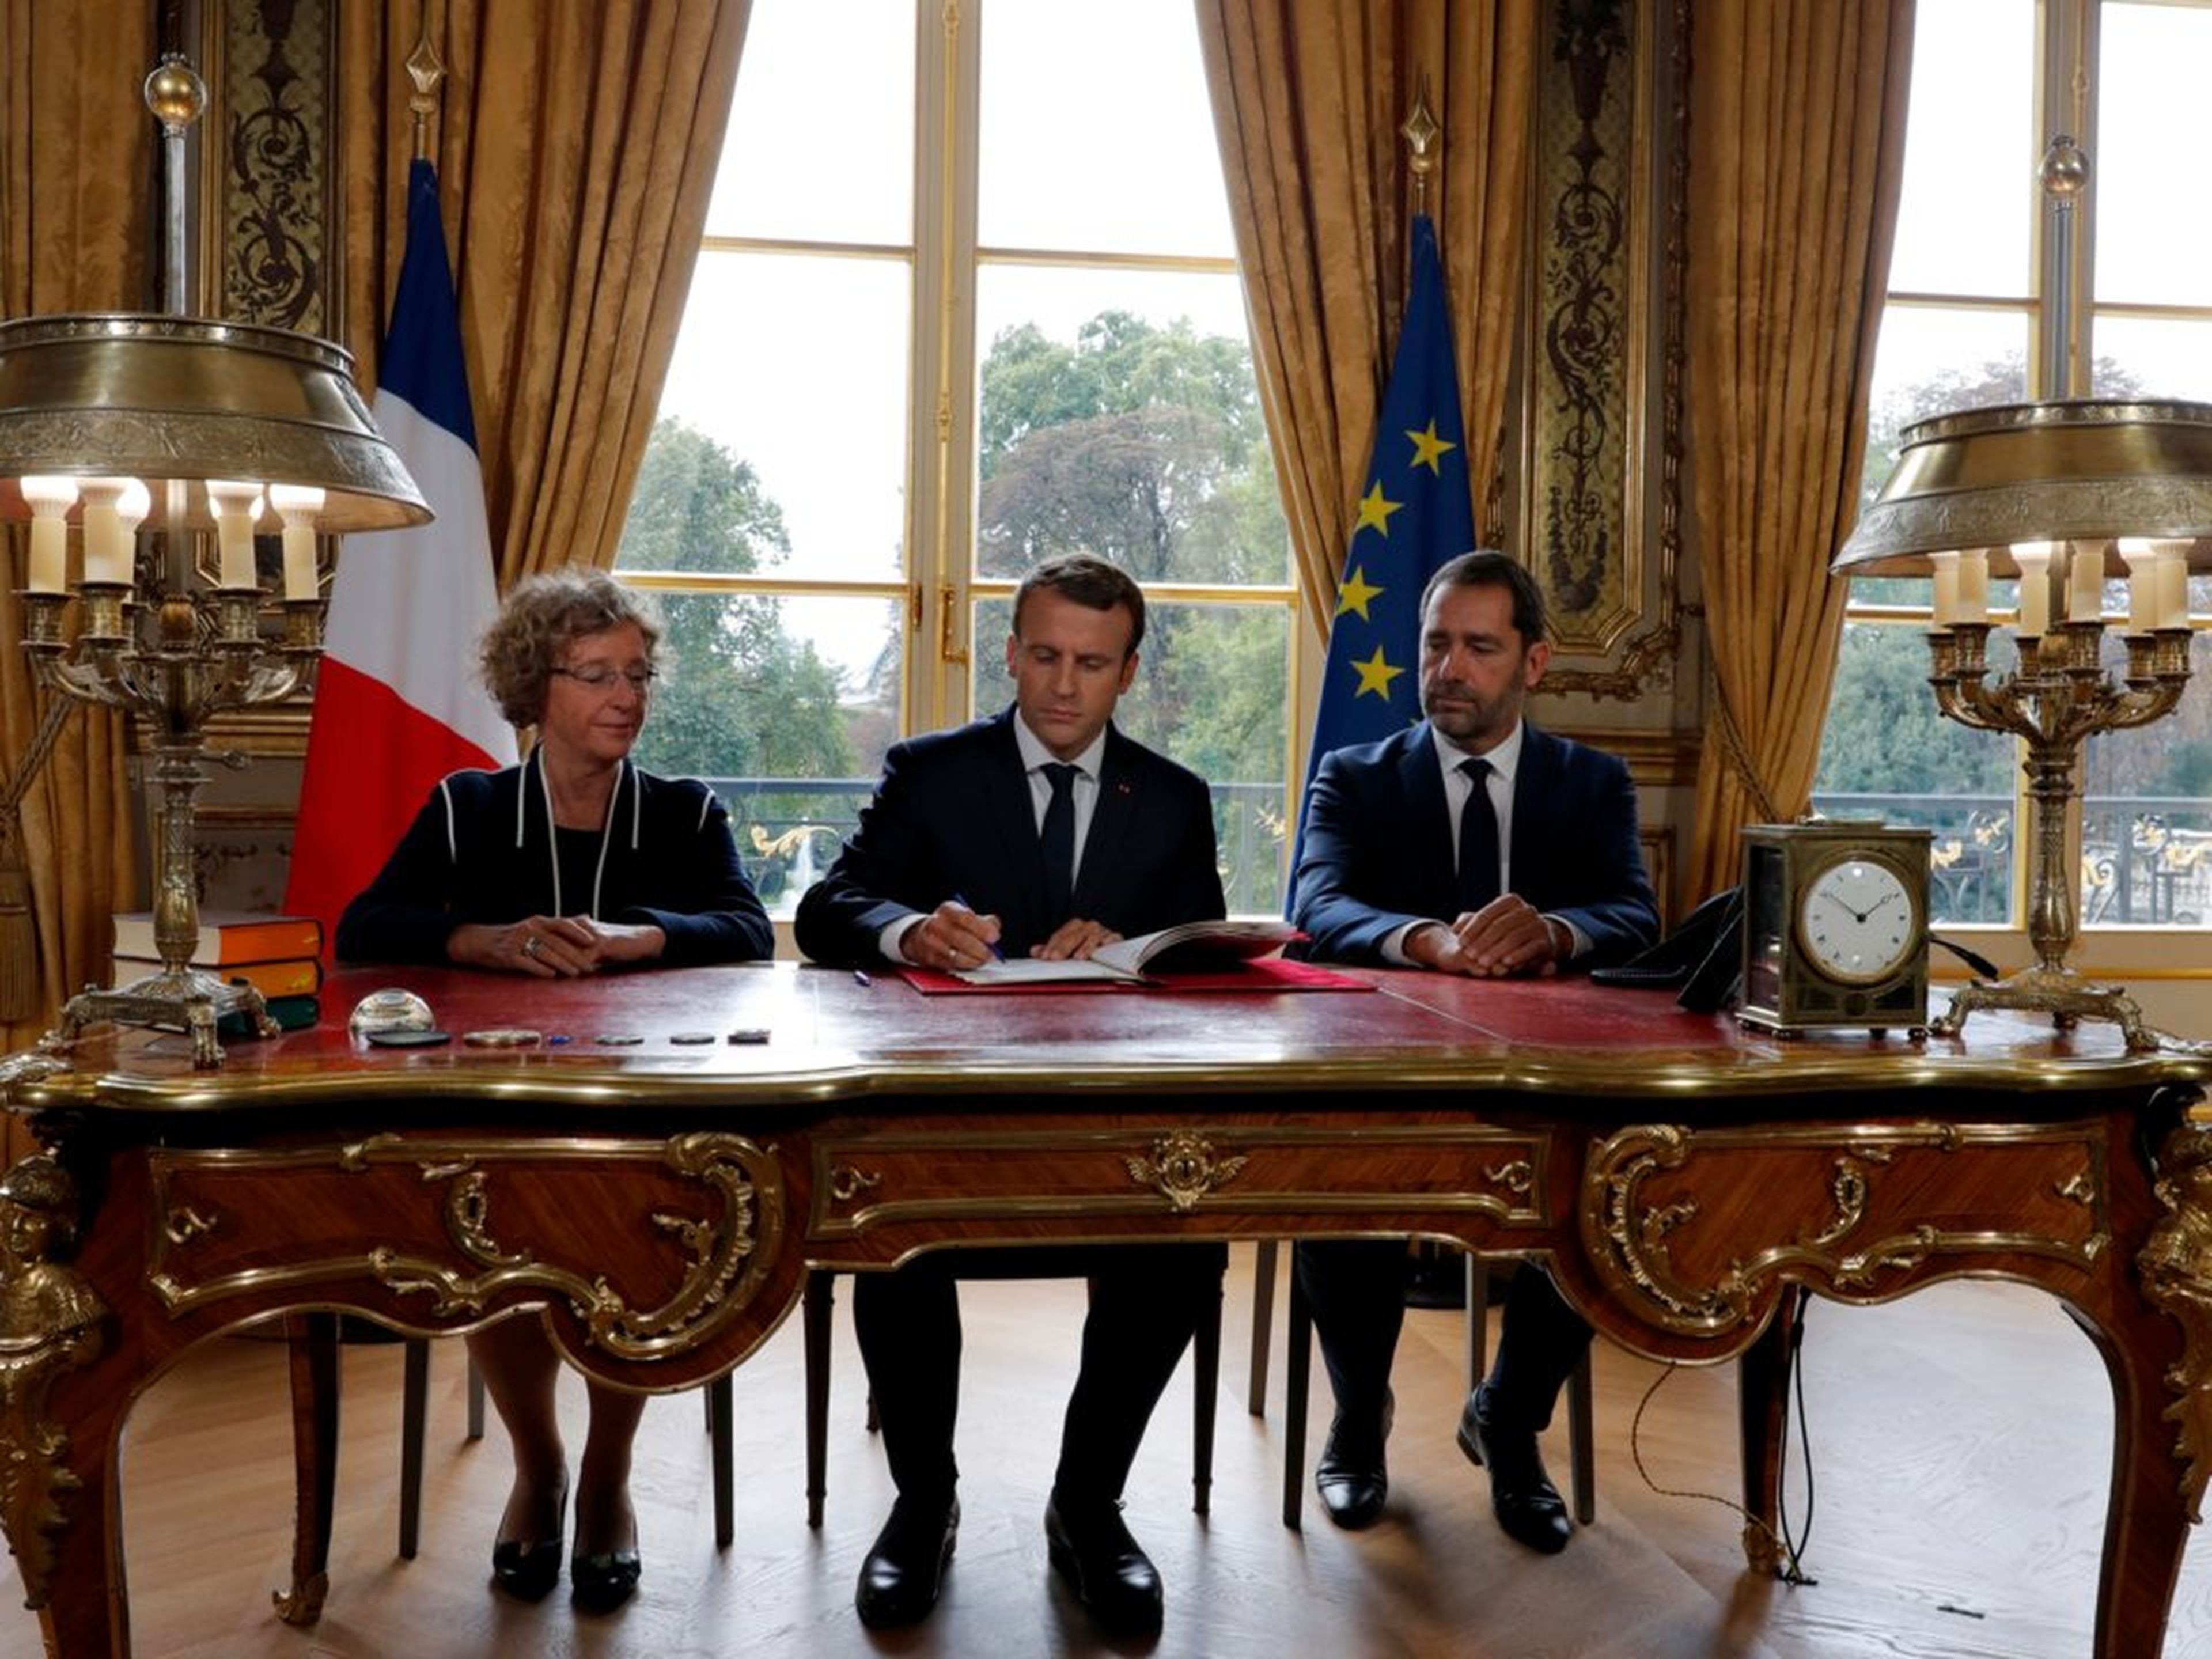 El presidente francés, Emmanuel Macron, en el Palacio del Elíseo en París junto a la ministra de Trabajo Muriel Penicaud y el portavoz del gobierno, Christophe Castaner, en 2017.